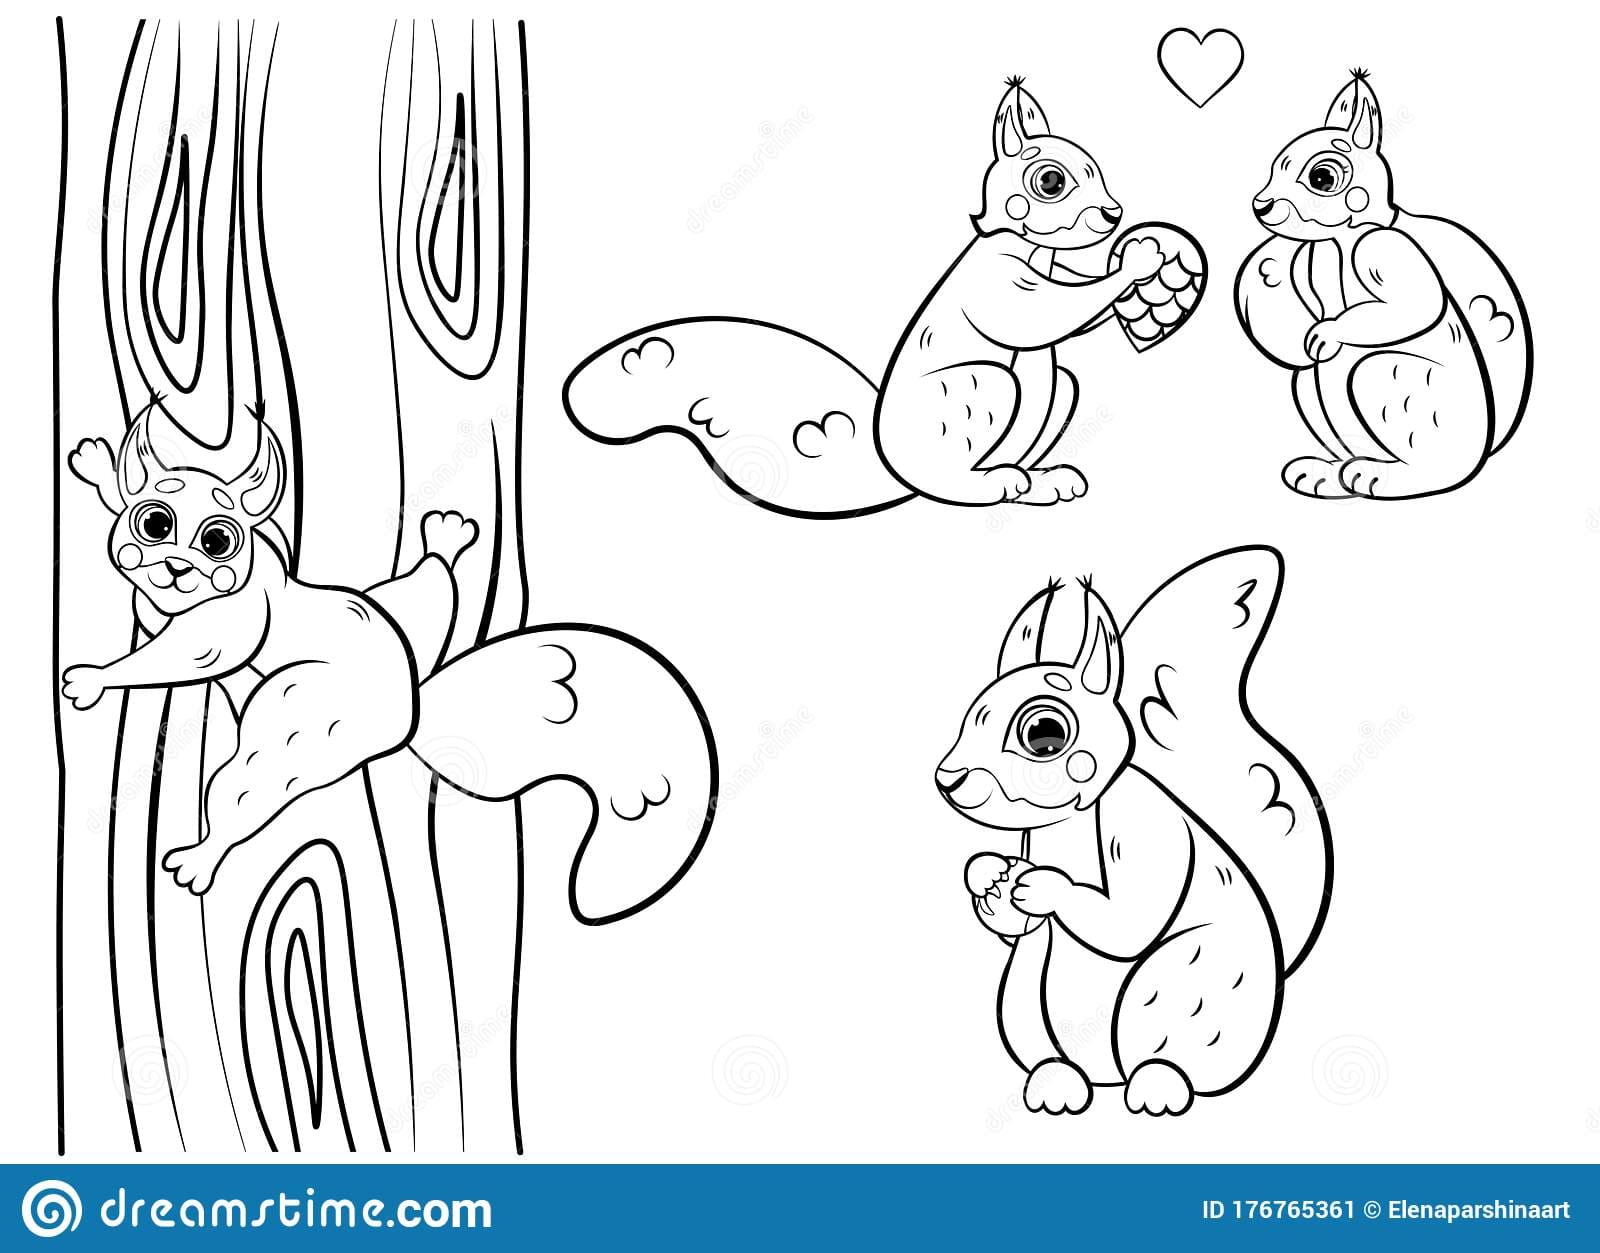 Cute Cartoon Squirrel Vector